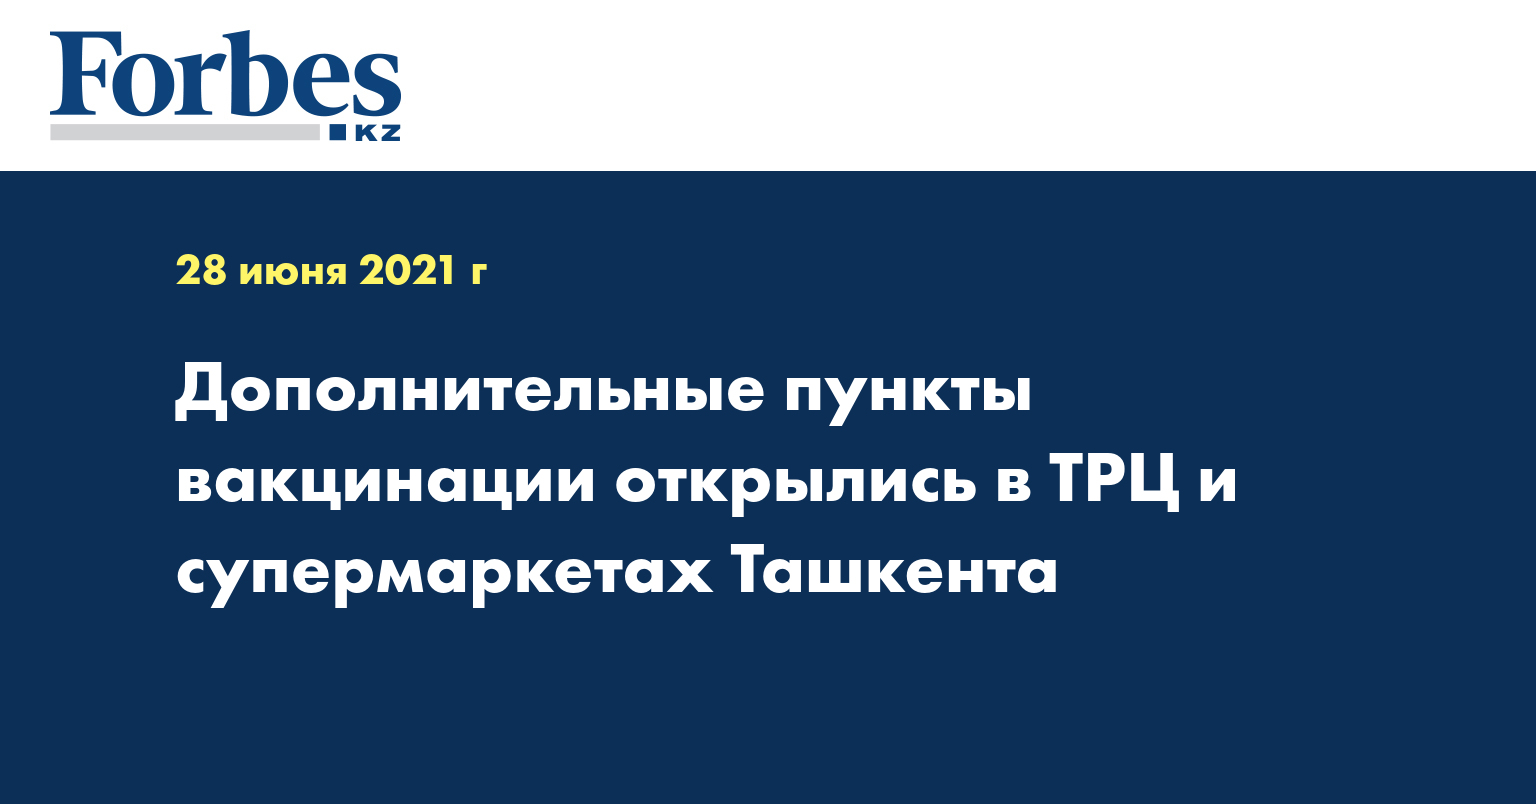  Дополнительные пункты вакцинации открылись в ТРЦ и супермаркетах Ташкента